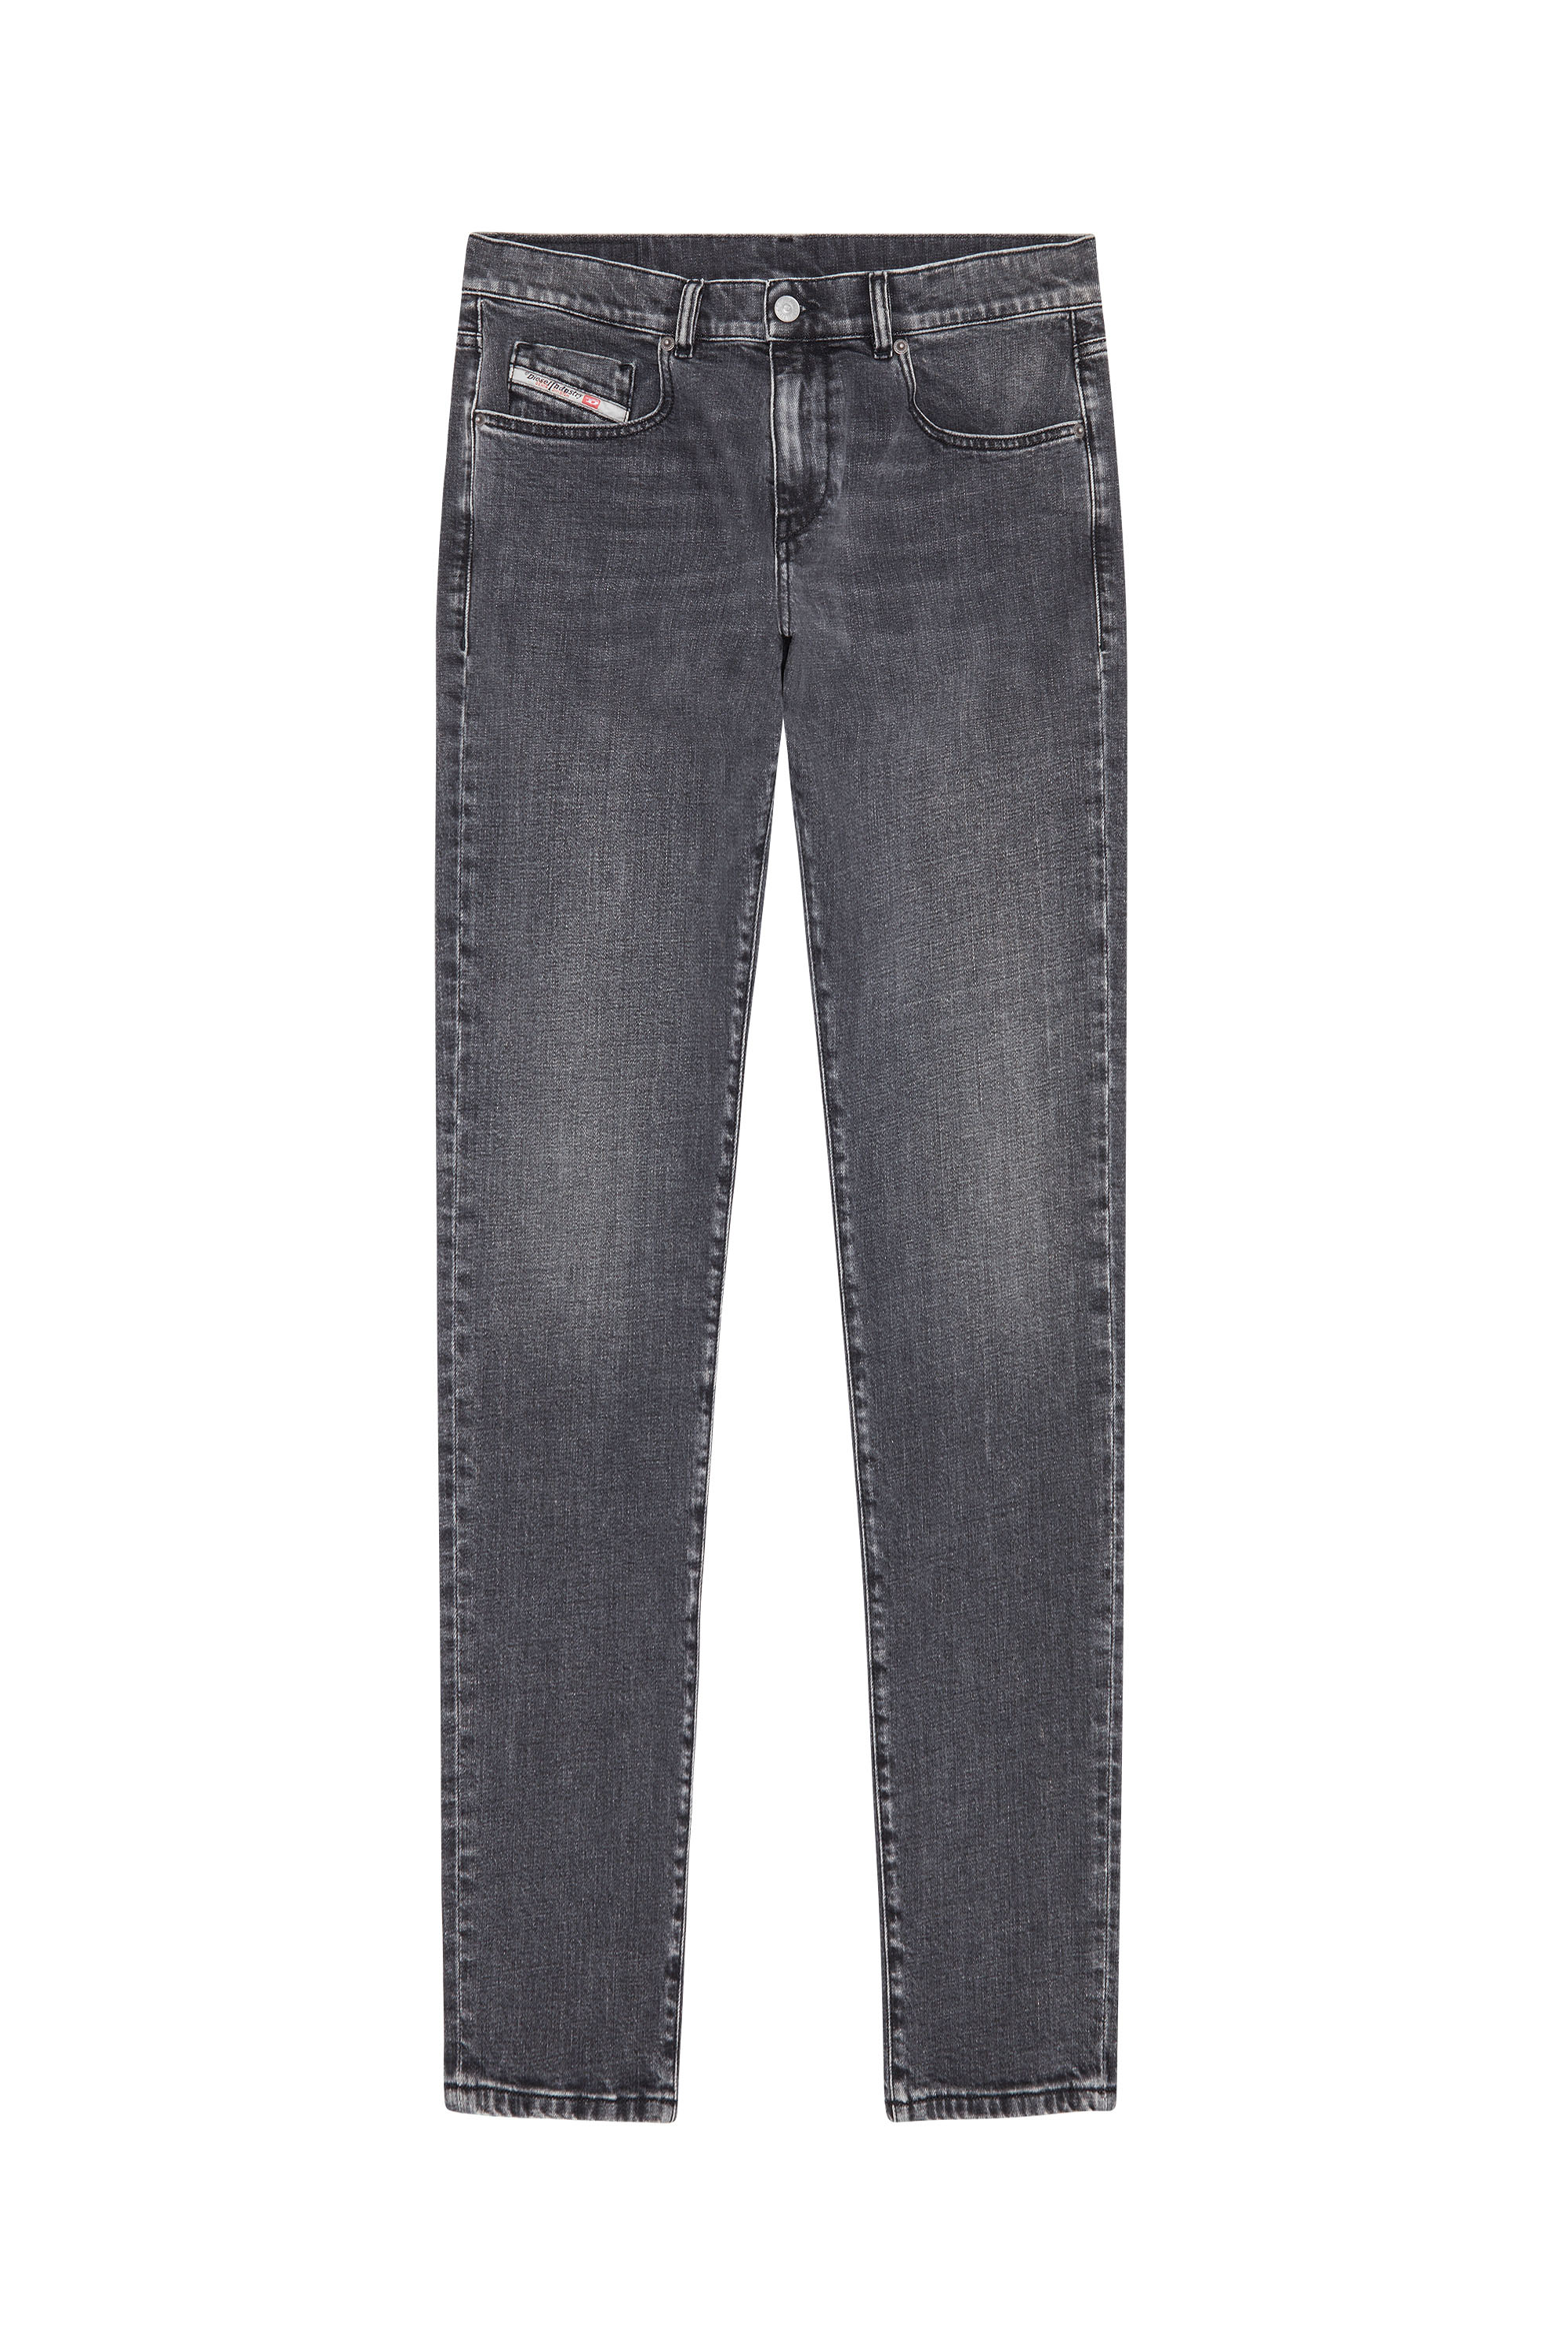 2019 D-Strukt 09C47 Slim Jeans, Black/Dark grey